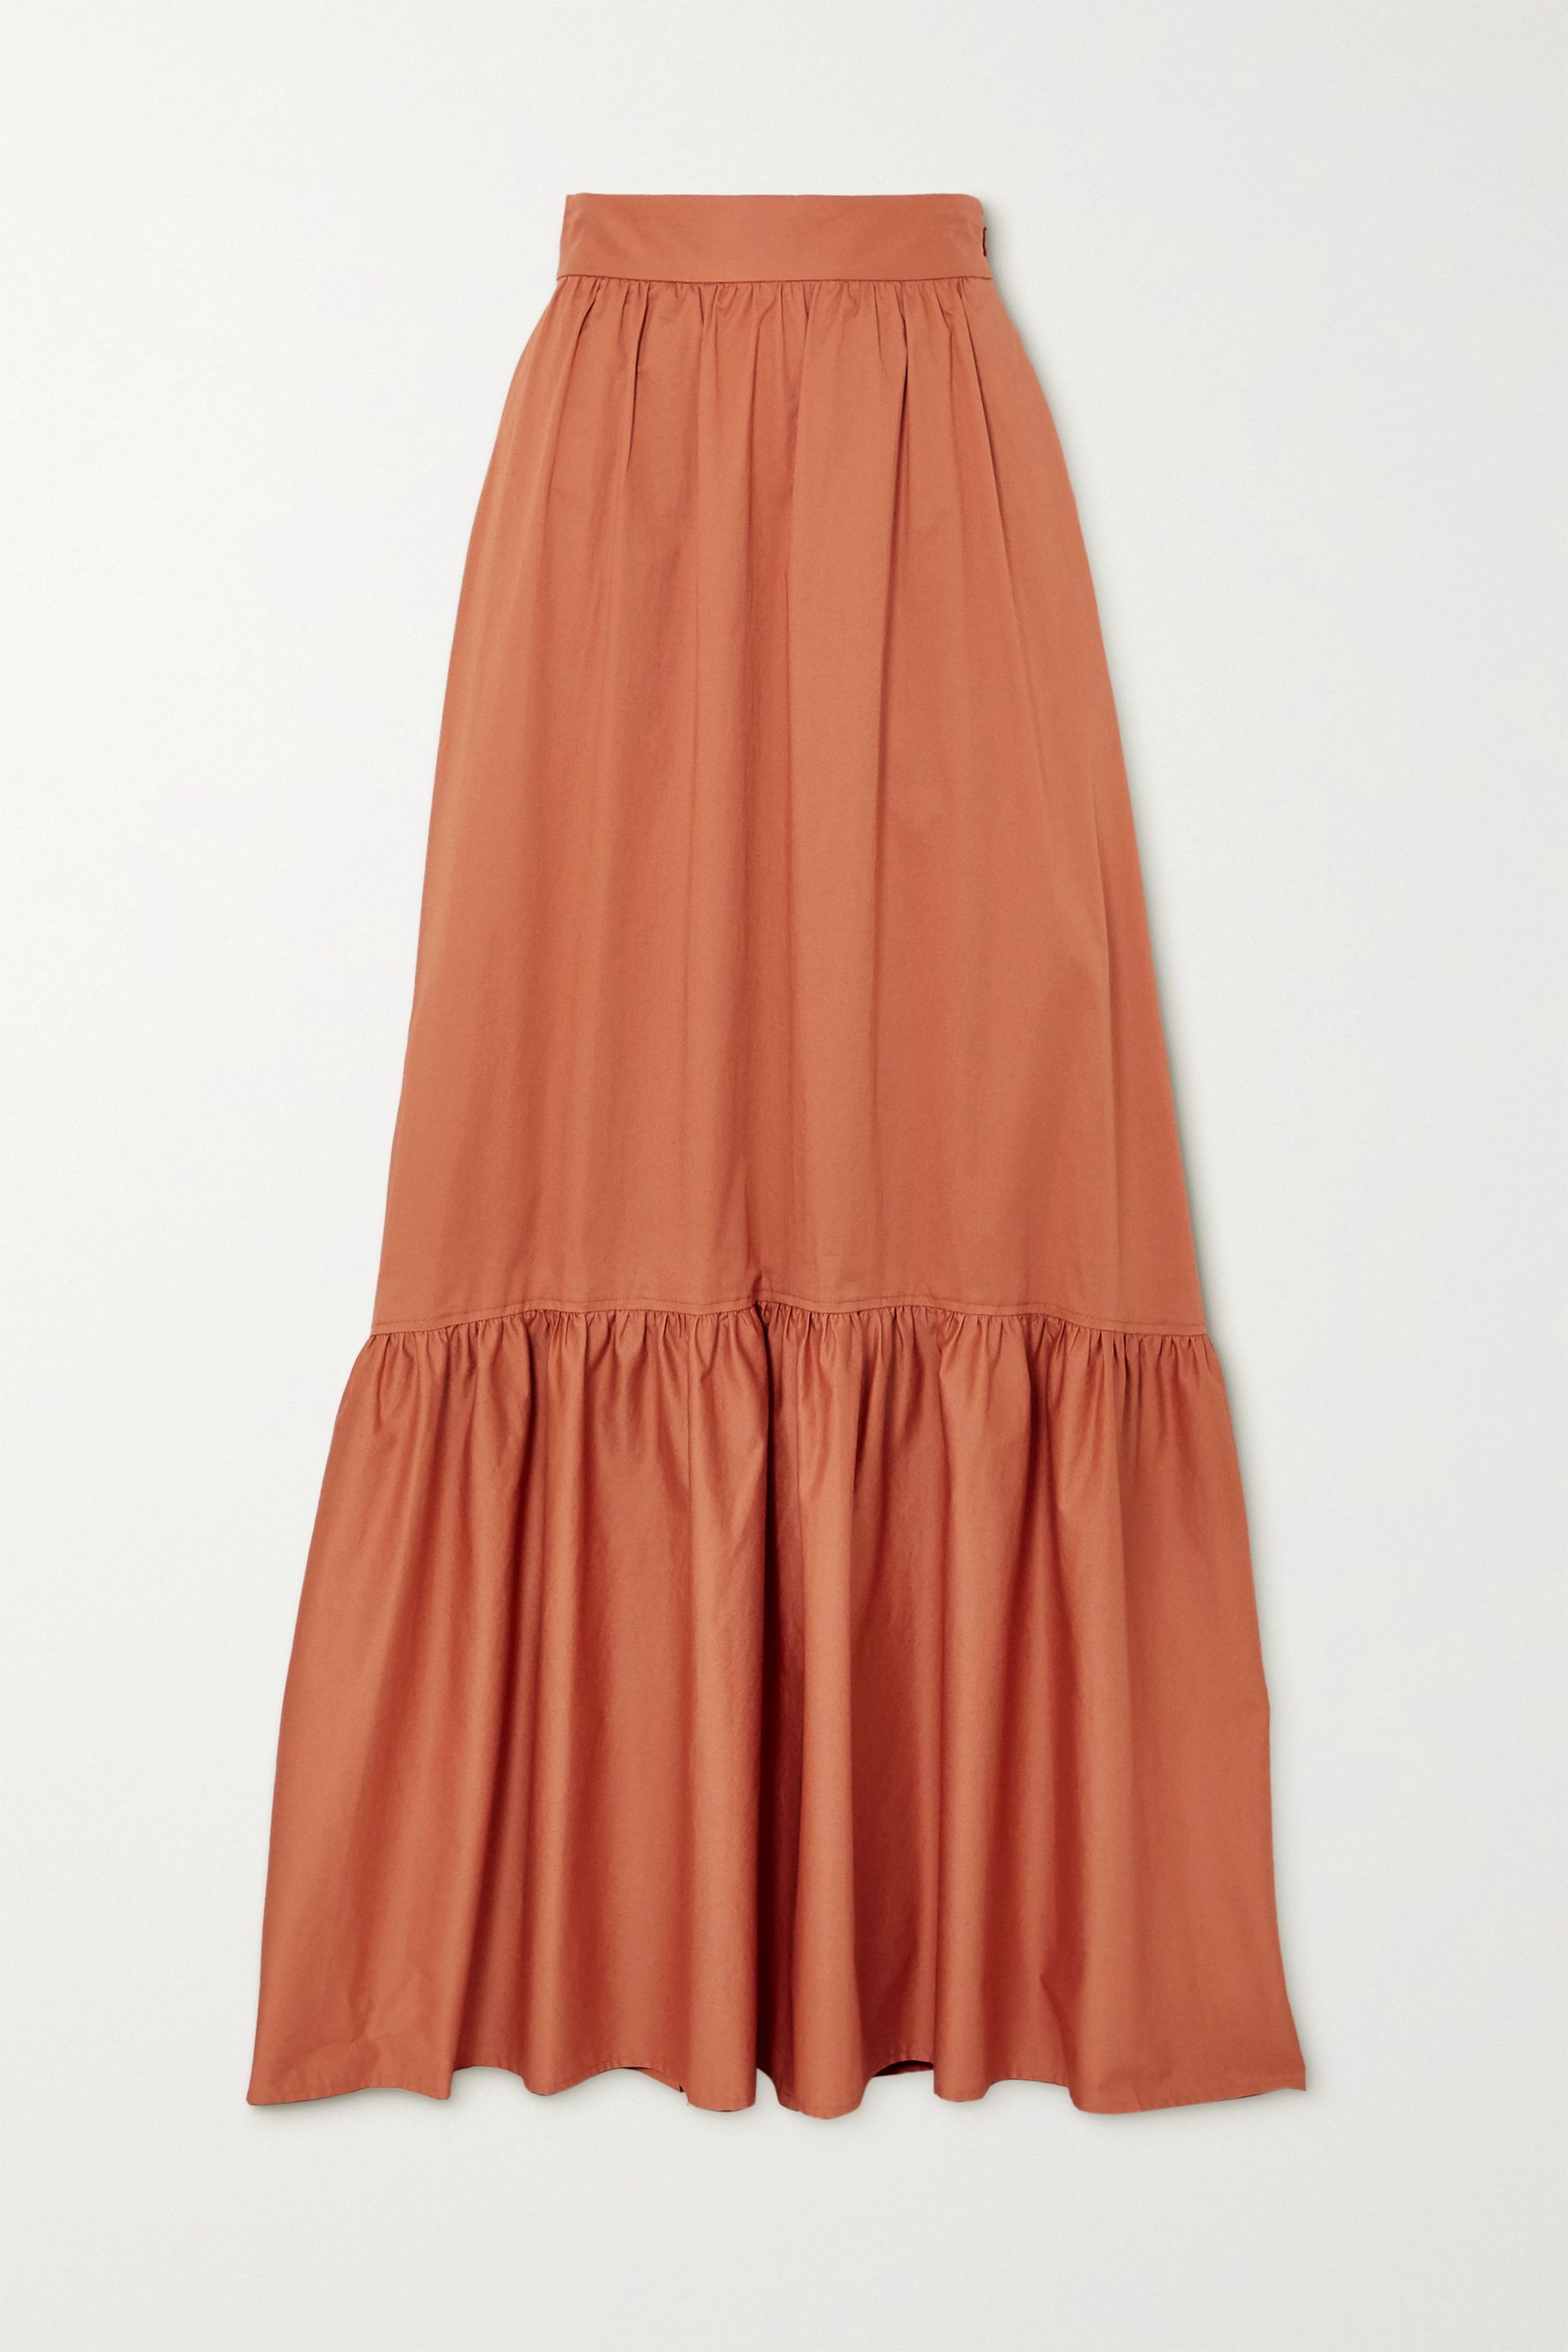 A.L.C. x Petra Flannery Mikell cotton-blend poplin maxi skirt | NET-A-PORTER (US)